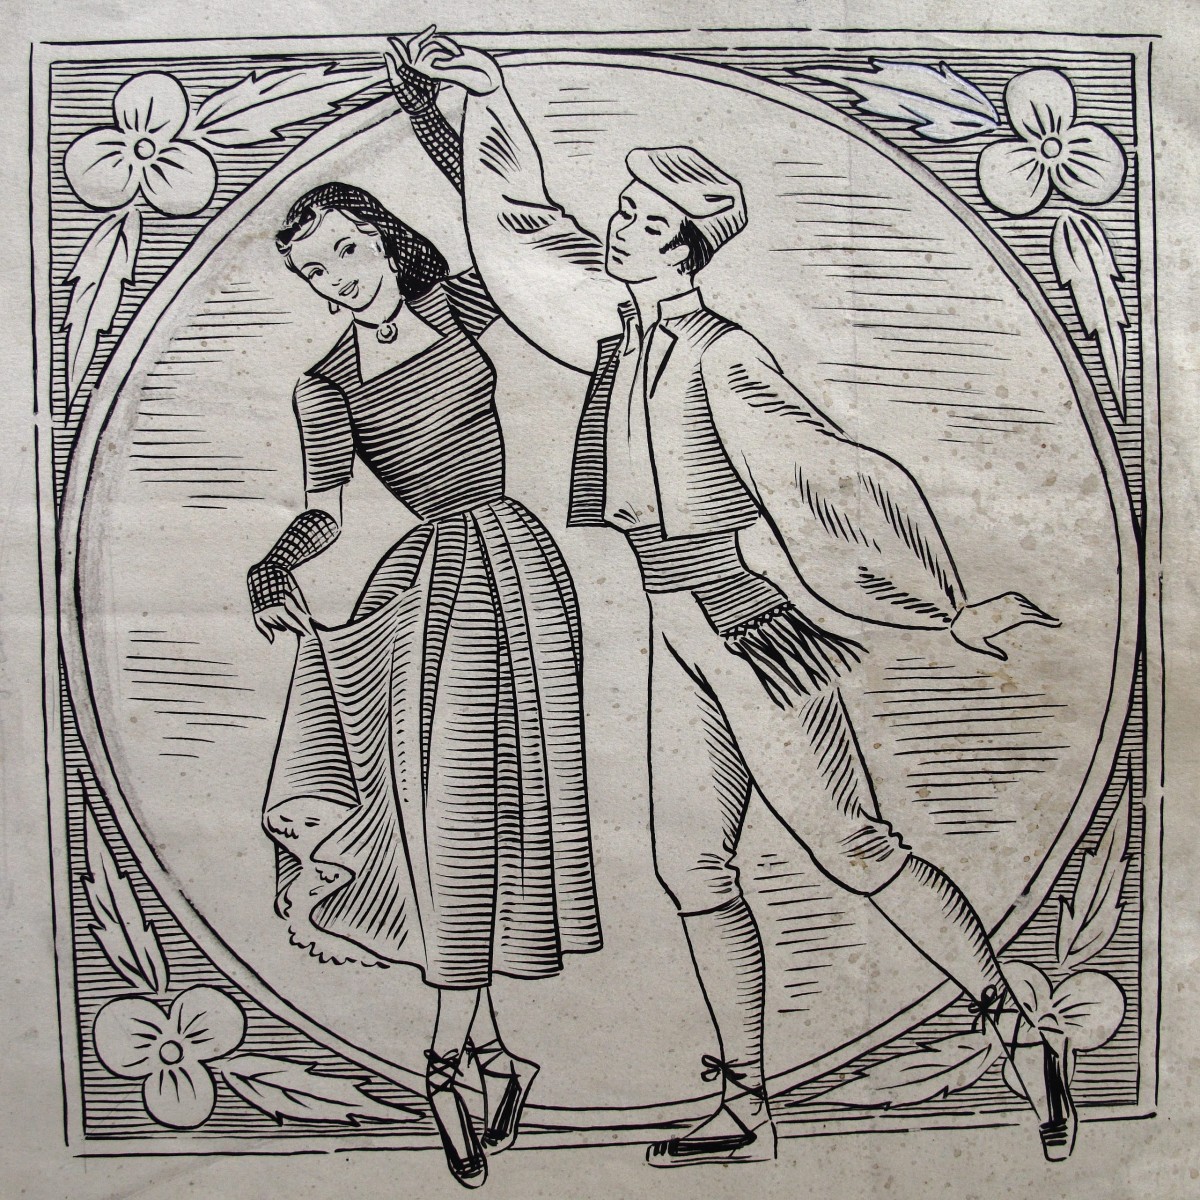 Parella de dansaire del 1952